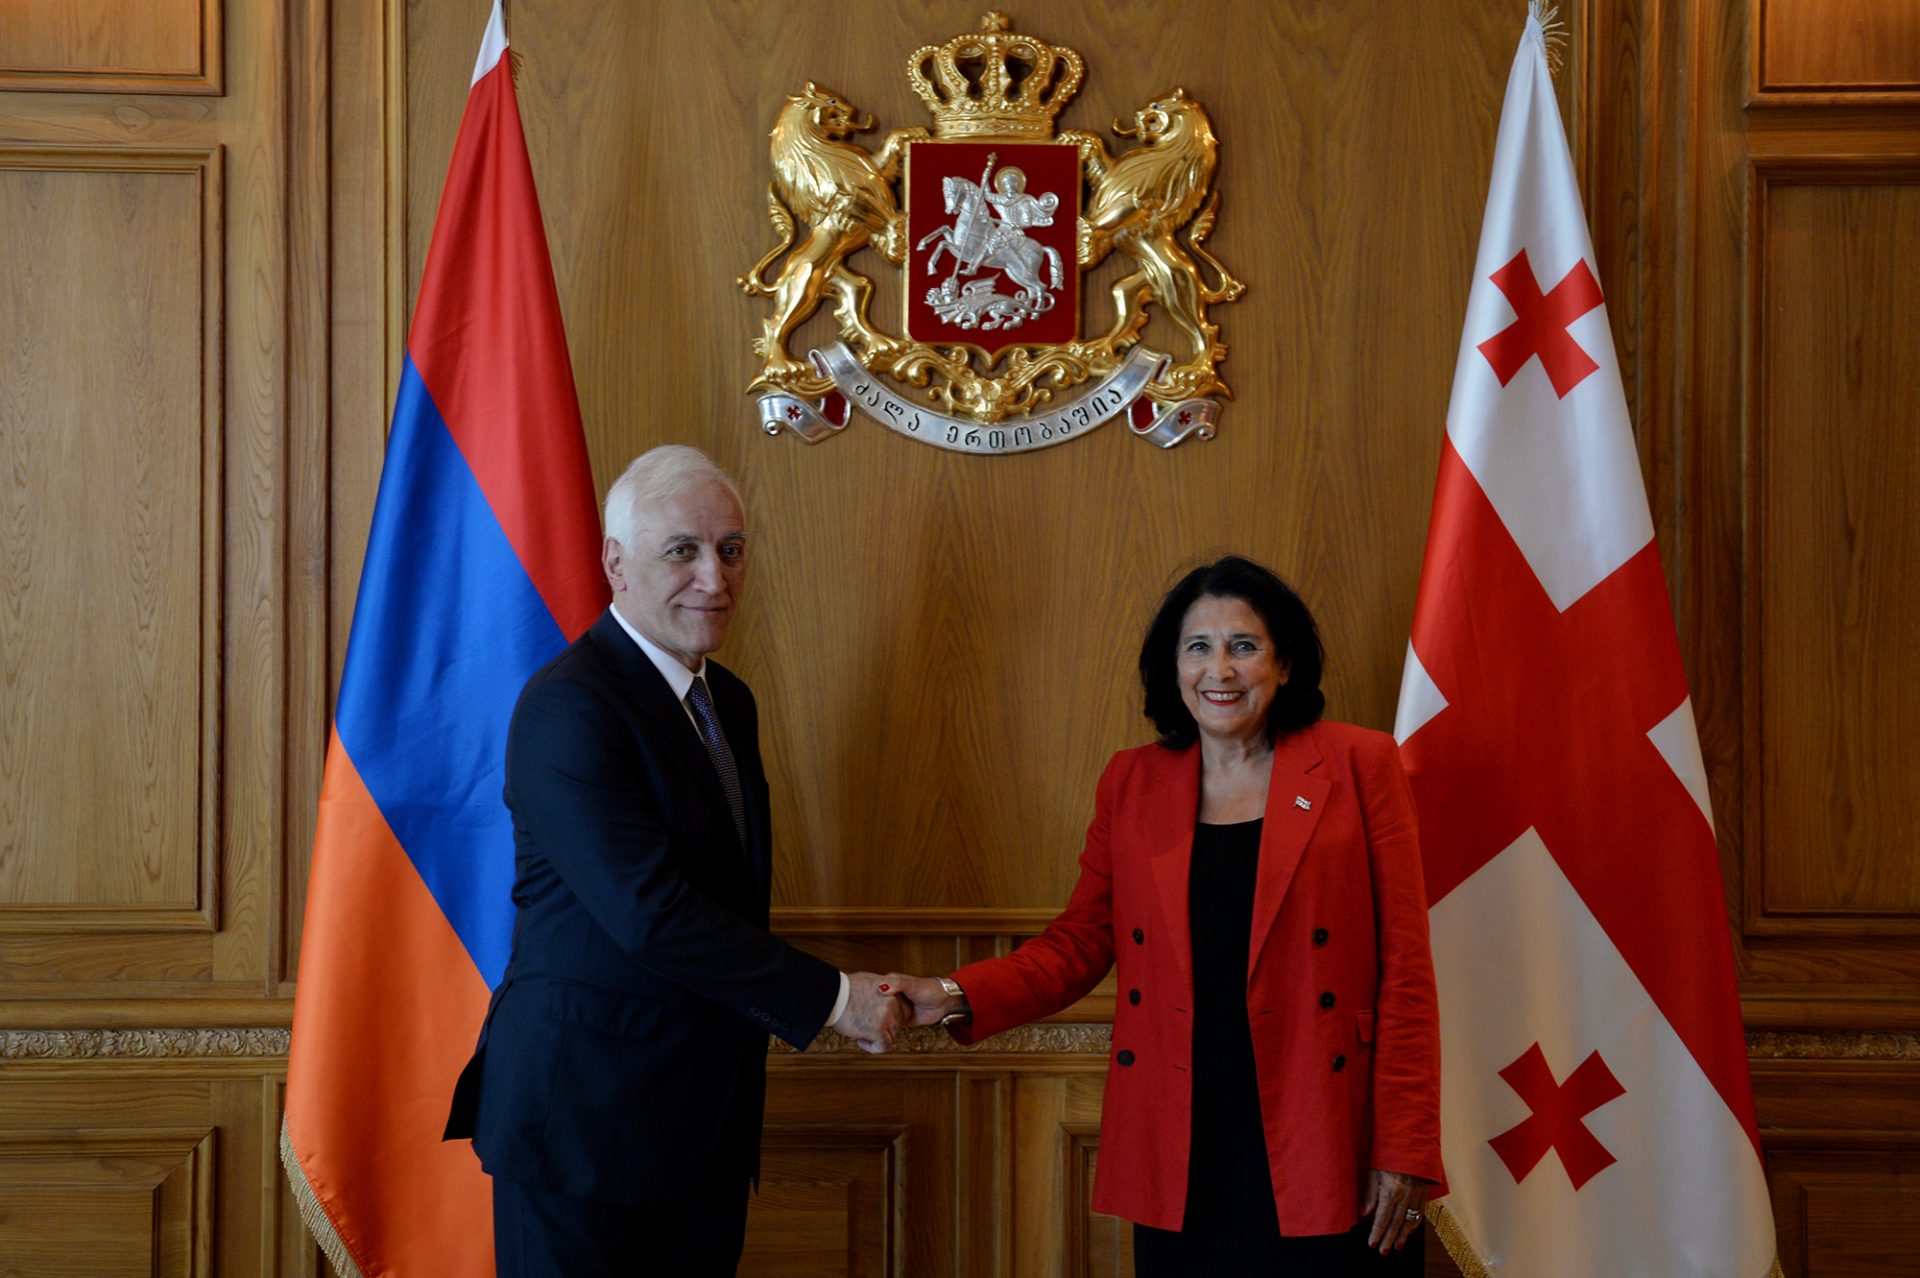 Ermenistan ve Gürcistan cumhurbaşkanları ikili ilişkiler, güvenlik ve bölge sorunlarını görüştü